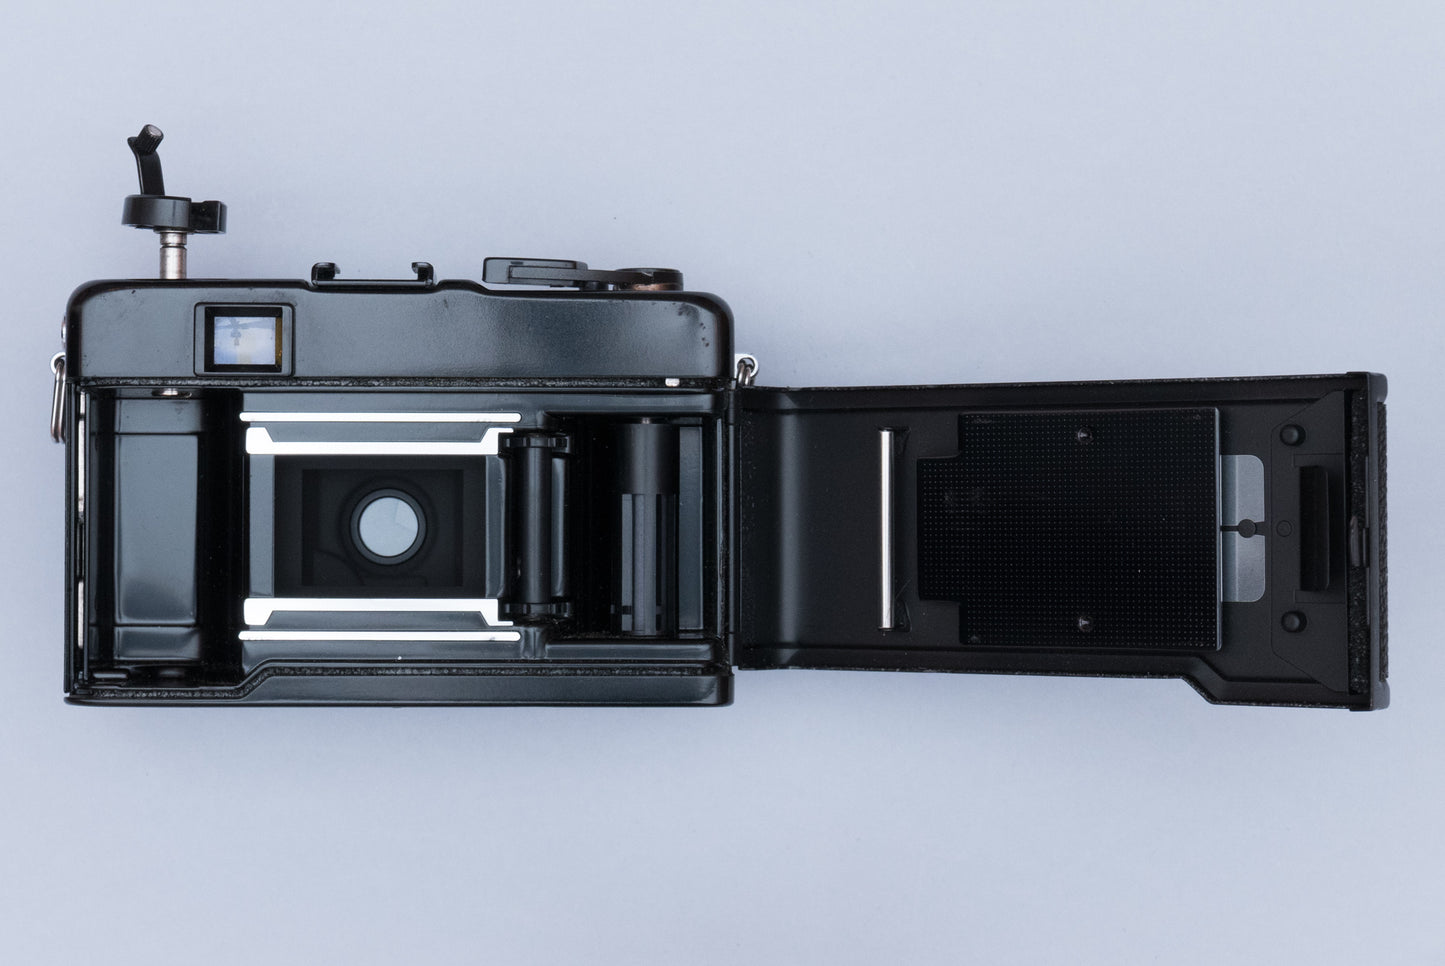 Yashica 35-ME Black Vintage 35mm Film Camera